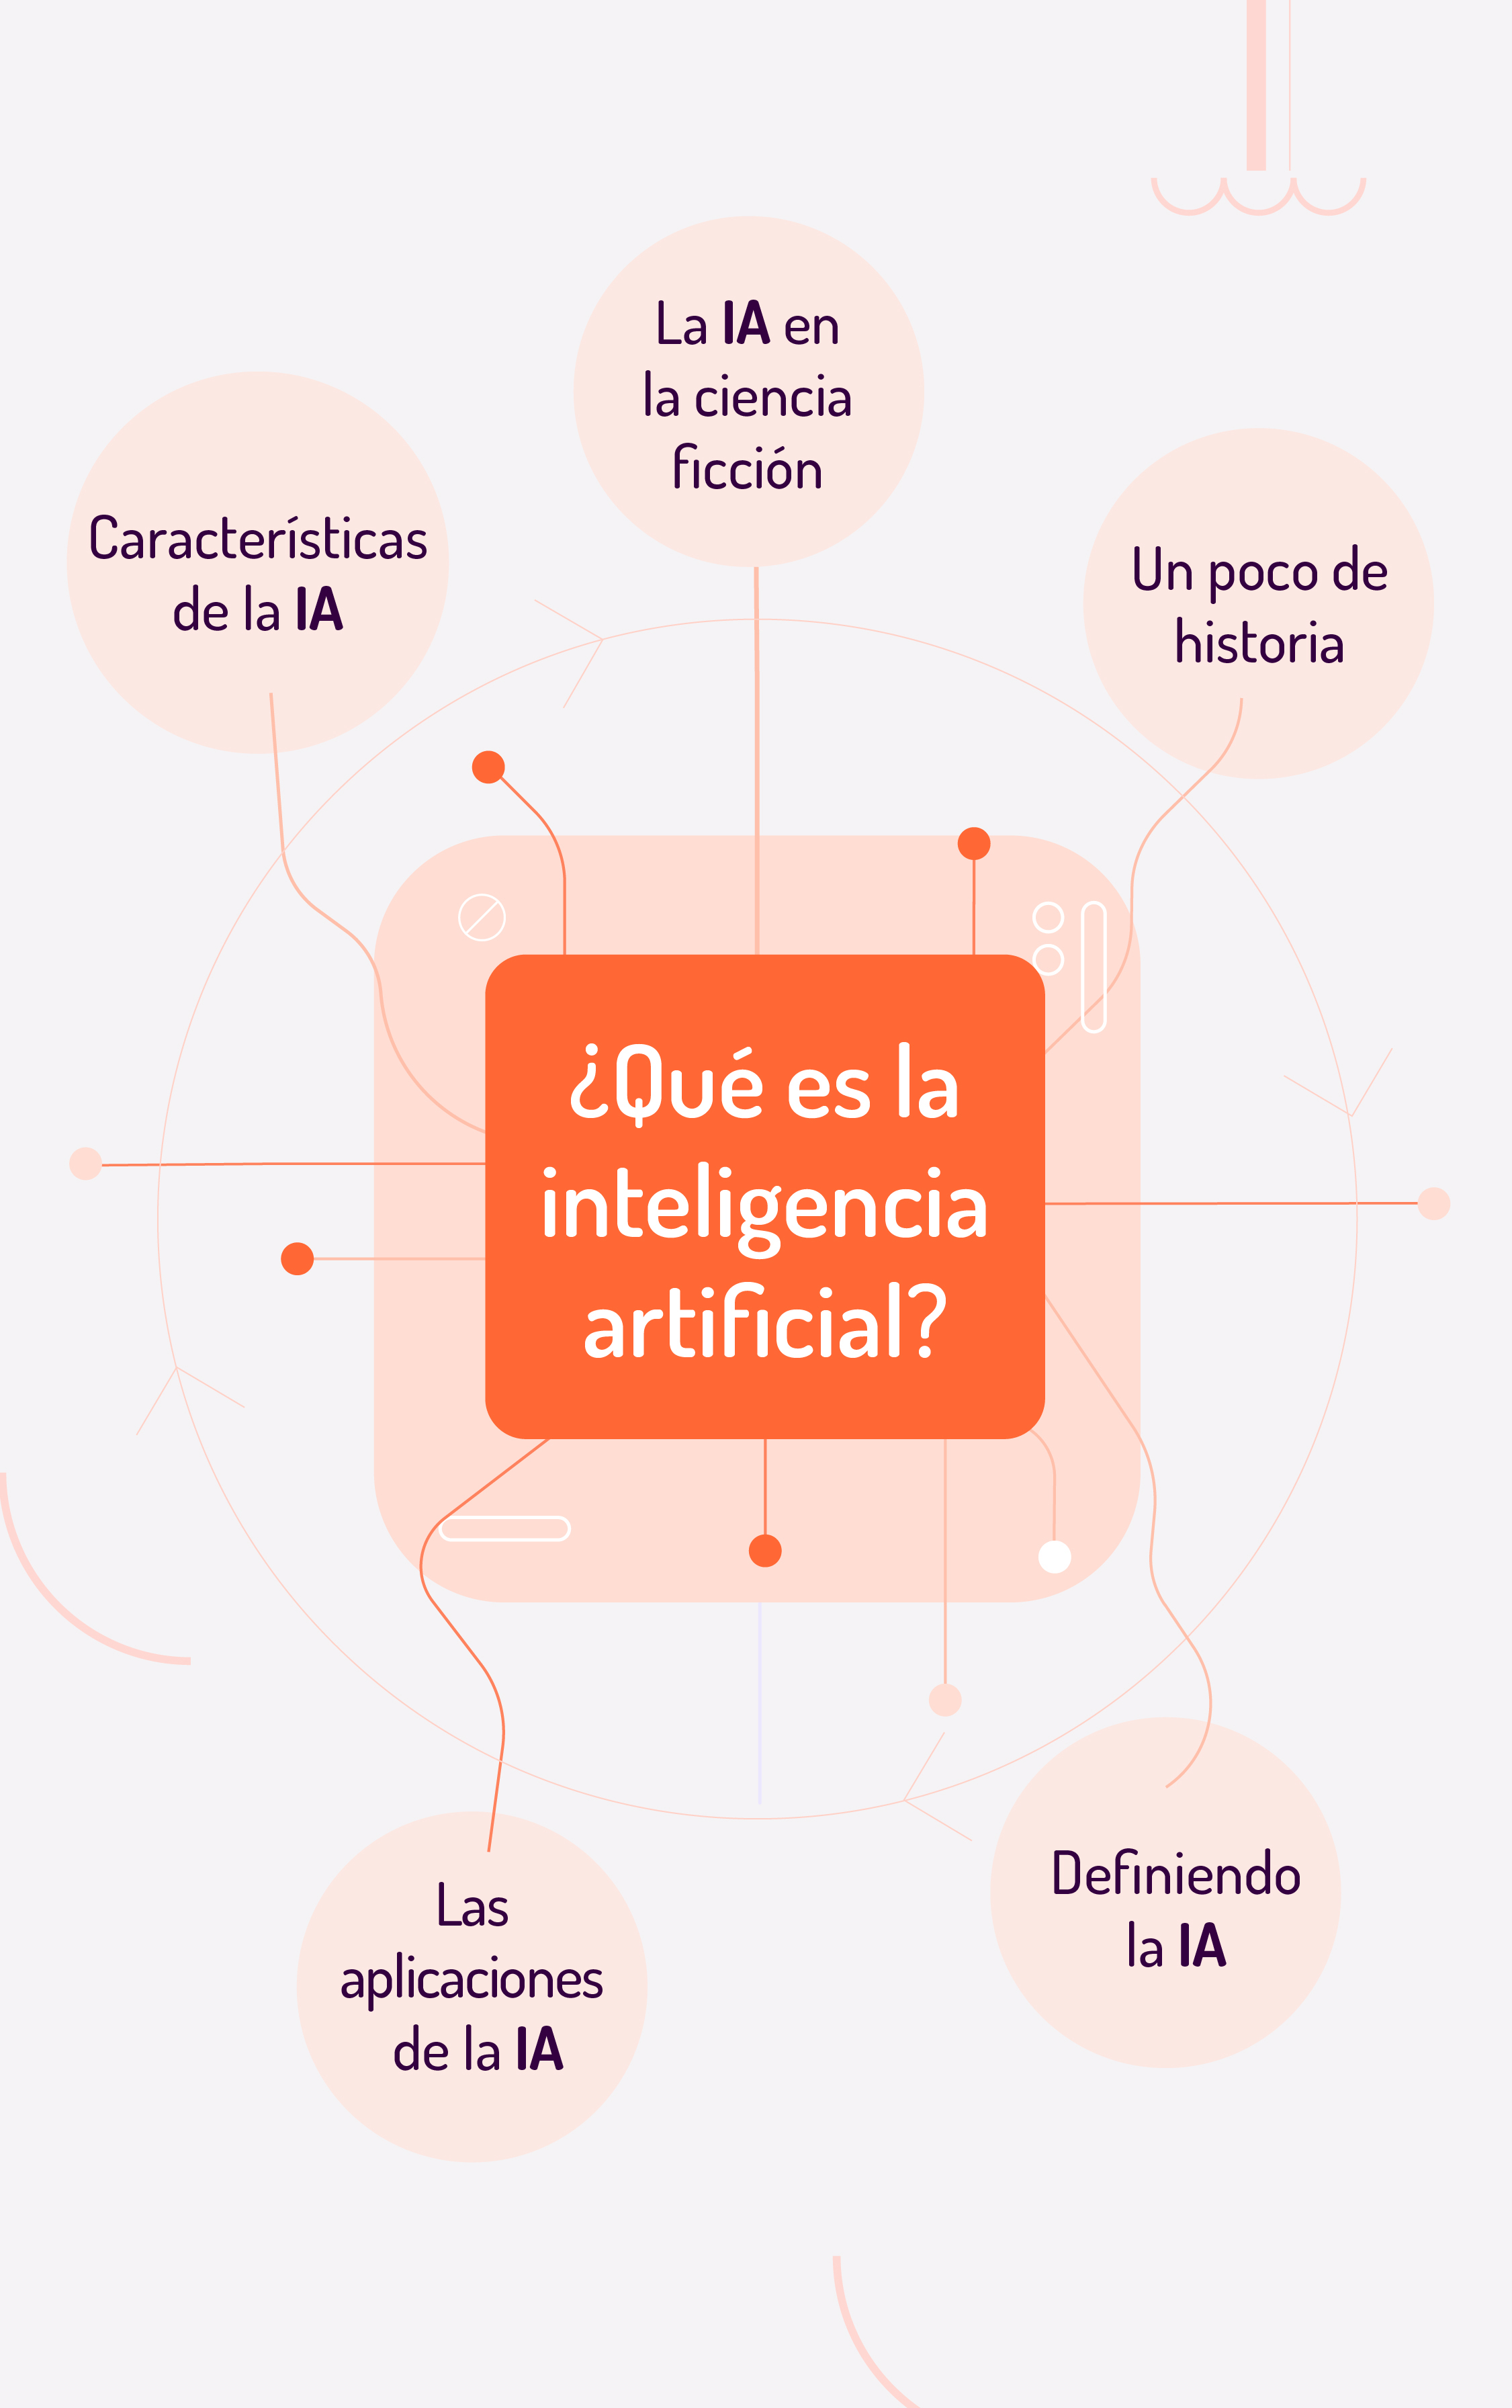 ¿Qué es la inteligencia artificial?